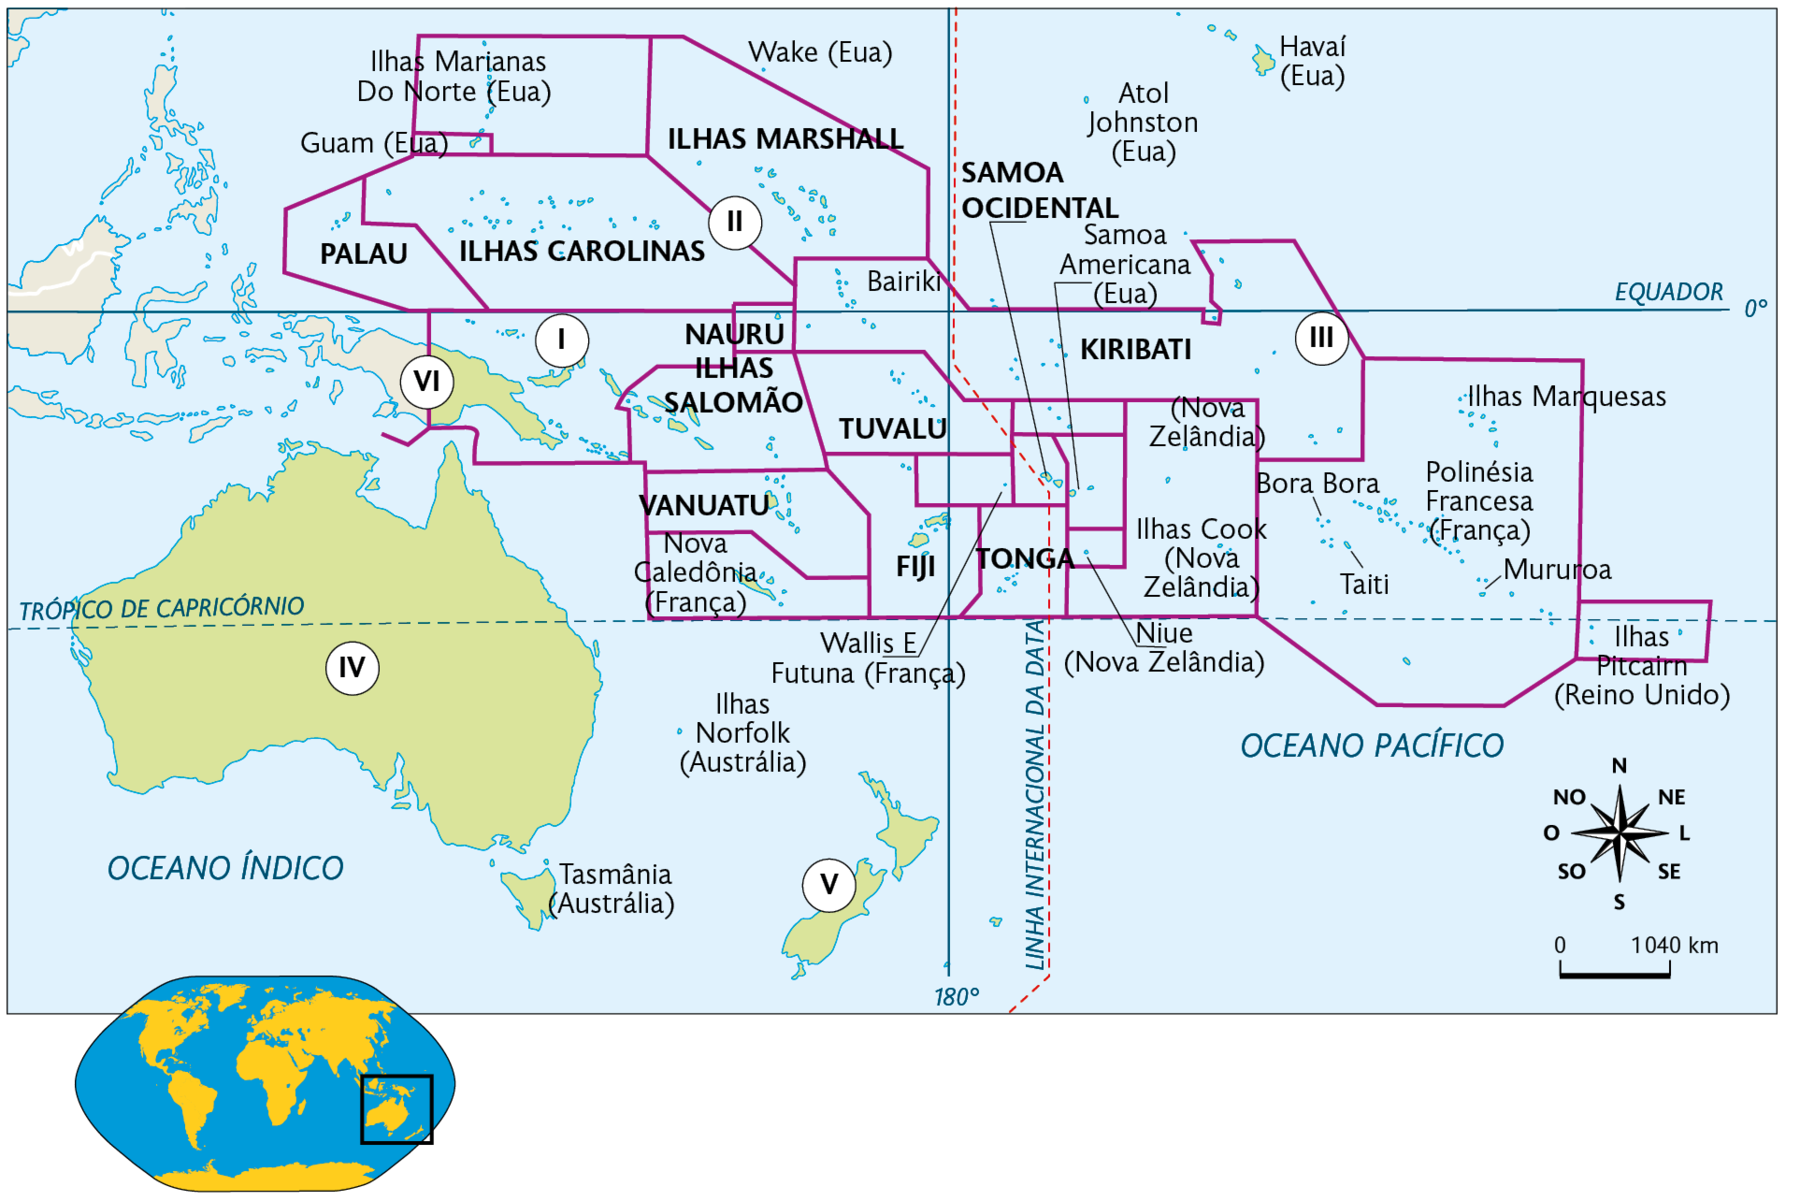 Mapa. Oceania. Indicações com números. Número 1. Ilhas Carolinas, Palau, Ilhas Marianas do Norte (território pertencente aos Estados Unidos), Guam (território pertencente aos Estados Unidos); Número 2. Ilhas Marshall, Wake (território pertencente aos Estados Unidos), Atol Johnston (território pertencente aos Estados Unidos), Havaí (território pertencente aos Estados Unidos). Número 3. Kiribati, Bora Bora, Ilhas Cook (território pertencente à Nova Zelândia), Taiti, Polinésia Francesa (território pertencente à França), Mururoa, Ilhas Marquesas, Ilhas Pitcaim (território pertencente ao Reino Unido), Nauru, Ilhas Salomão, Vanuatu, Nova Caledônia (França), Tuvalu, Fiji, Biriki, Samoa Ocidental, Tonga, Samoa Americana (território pertencente aos Estados Unidos), Niue (território pertencente à  Nova Zelândia). Número 4. Austrália. Número 5. Nova Zelândia. Número 6. Papua Nova Guiné. No canto inferior esquerdo, mapa de localização, planisfério destacando a região descrita. No canto inferior direito, a rosa dos ventos e a escala: 1040 quilômetros por centímetro.